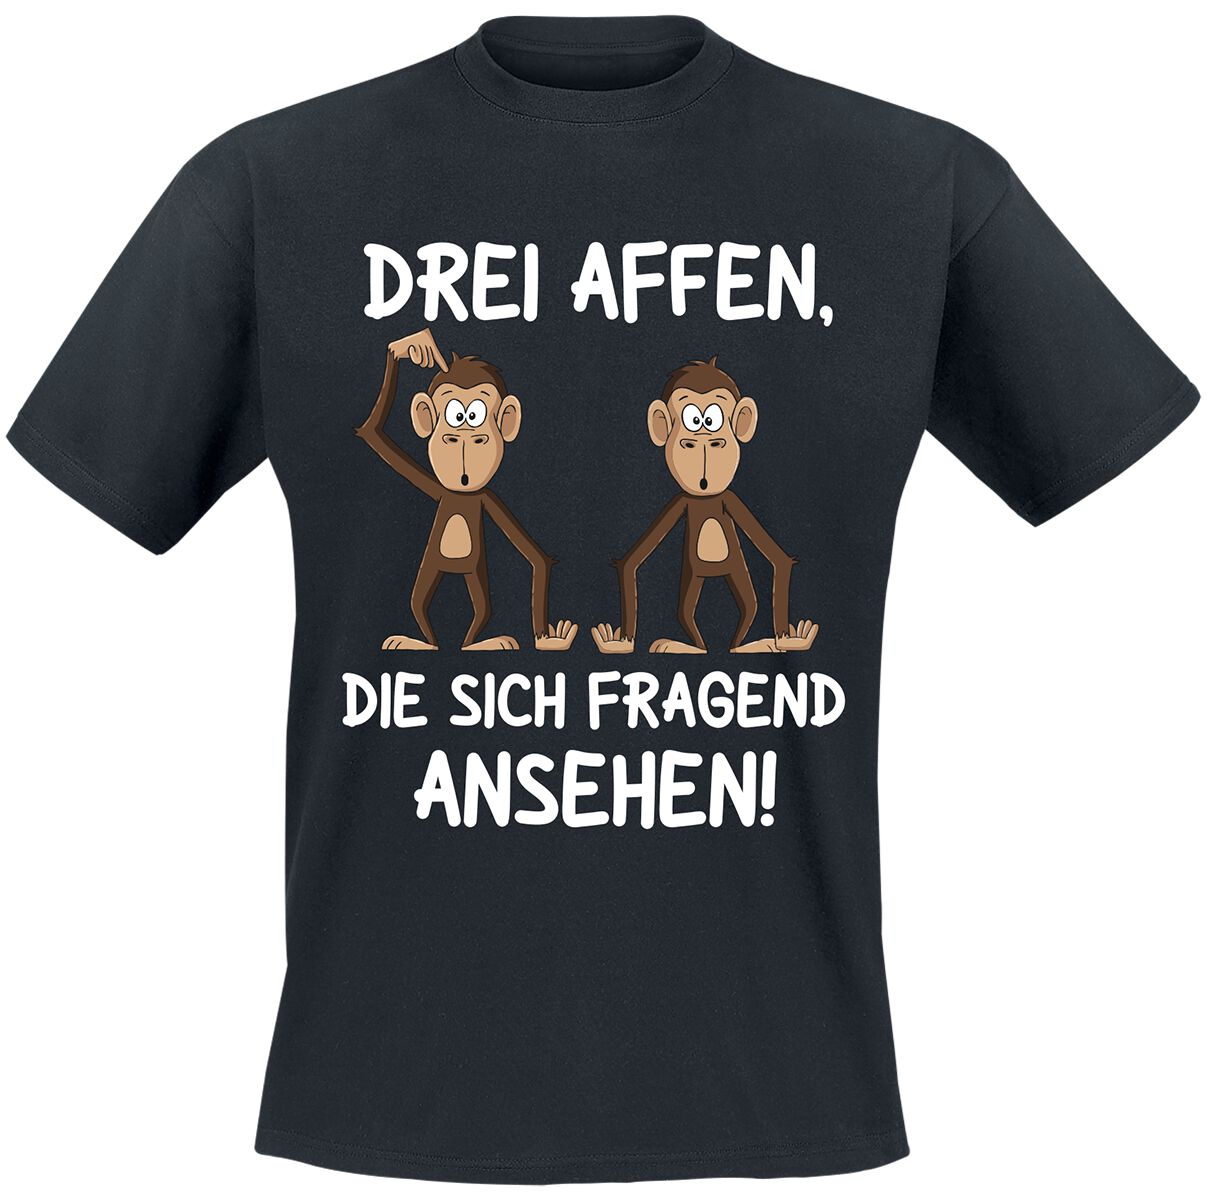 Tierisch Drei Affen, die sich fragend ansehen! T-Shirt schwarz in 4XL